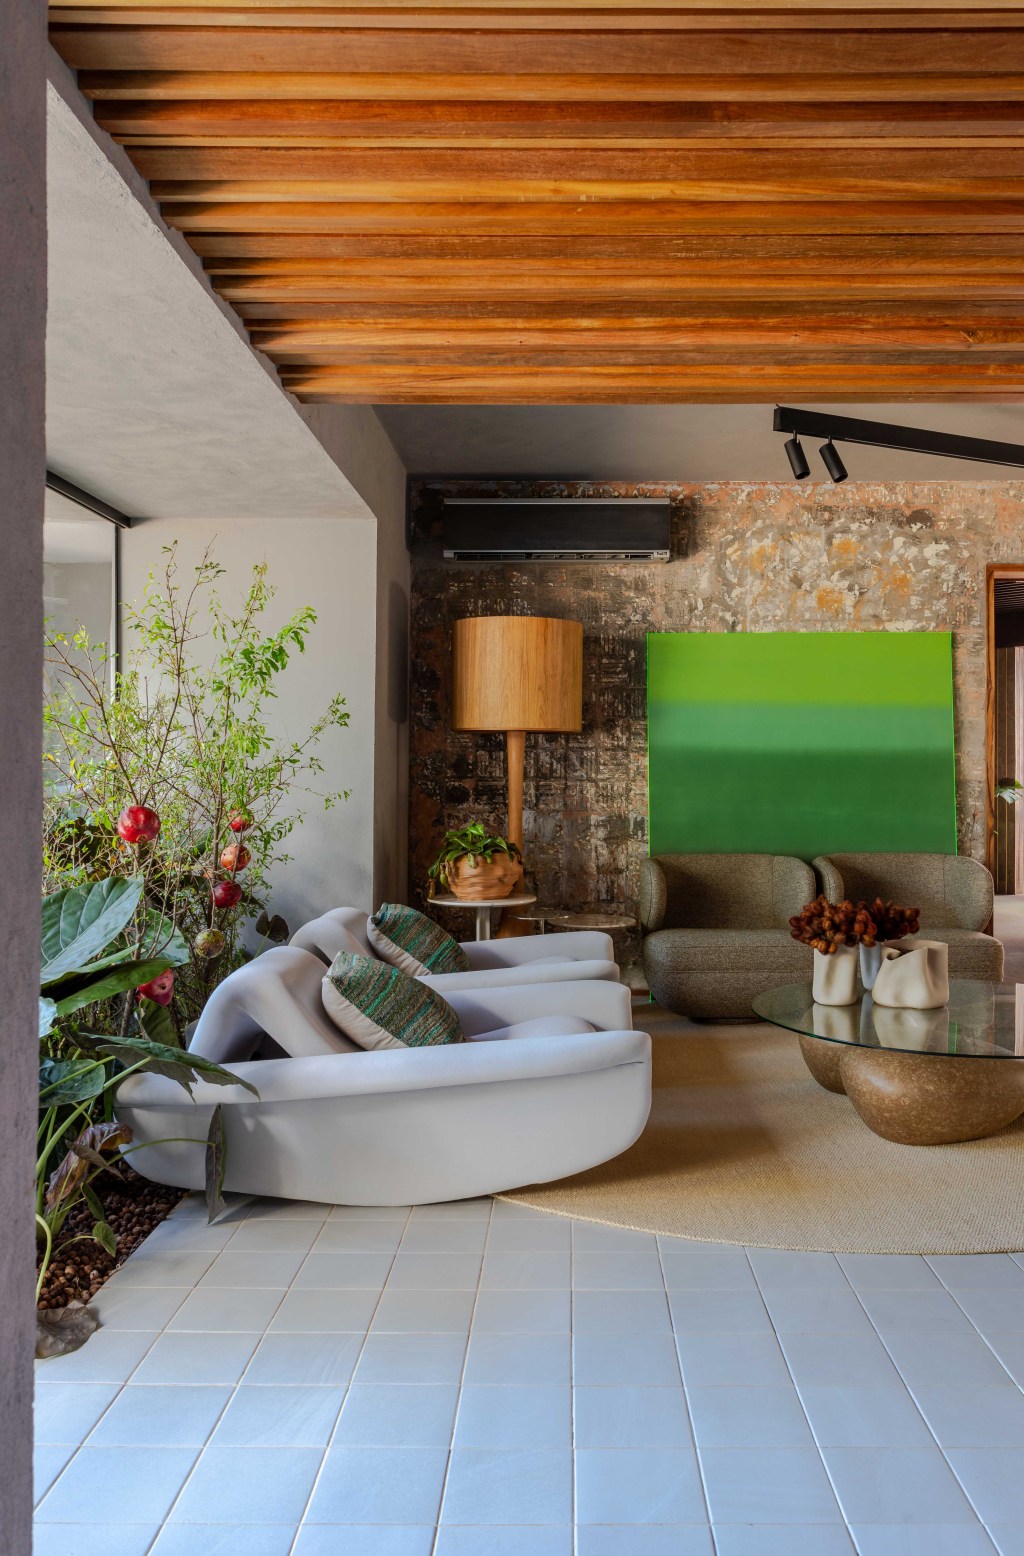 Cozinha Ágape, projeto de Tatiana Melo para a CASACOR Bahia 2023. Na foto, cozinha com sala de estar, jardim e poltronas.